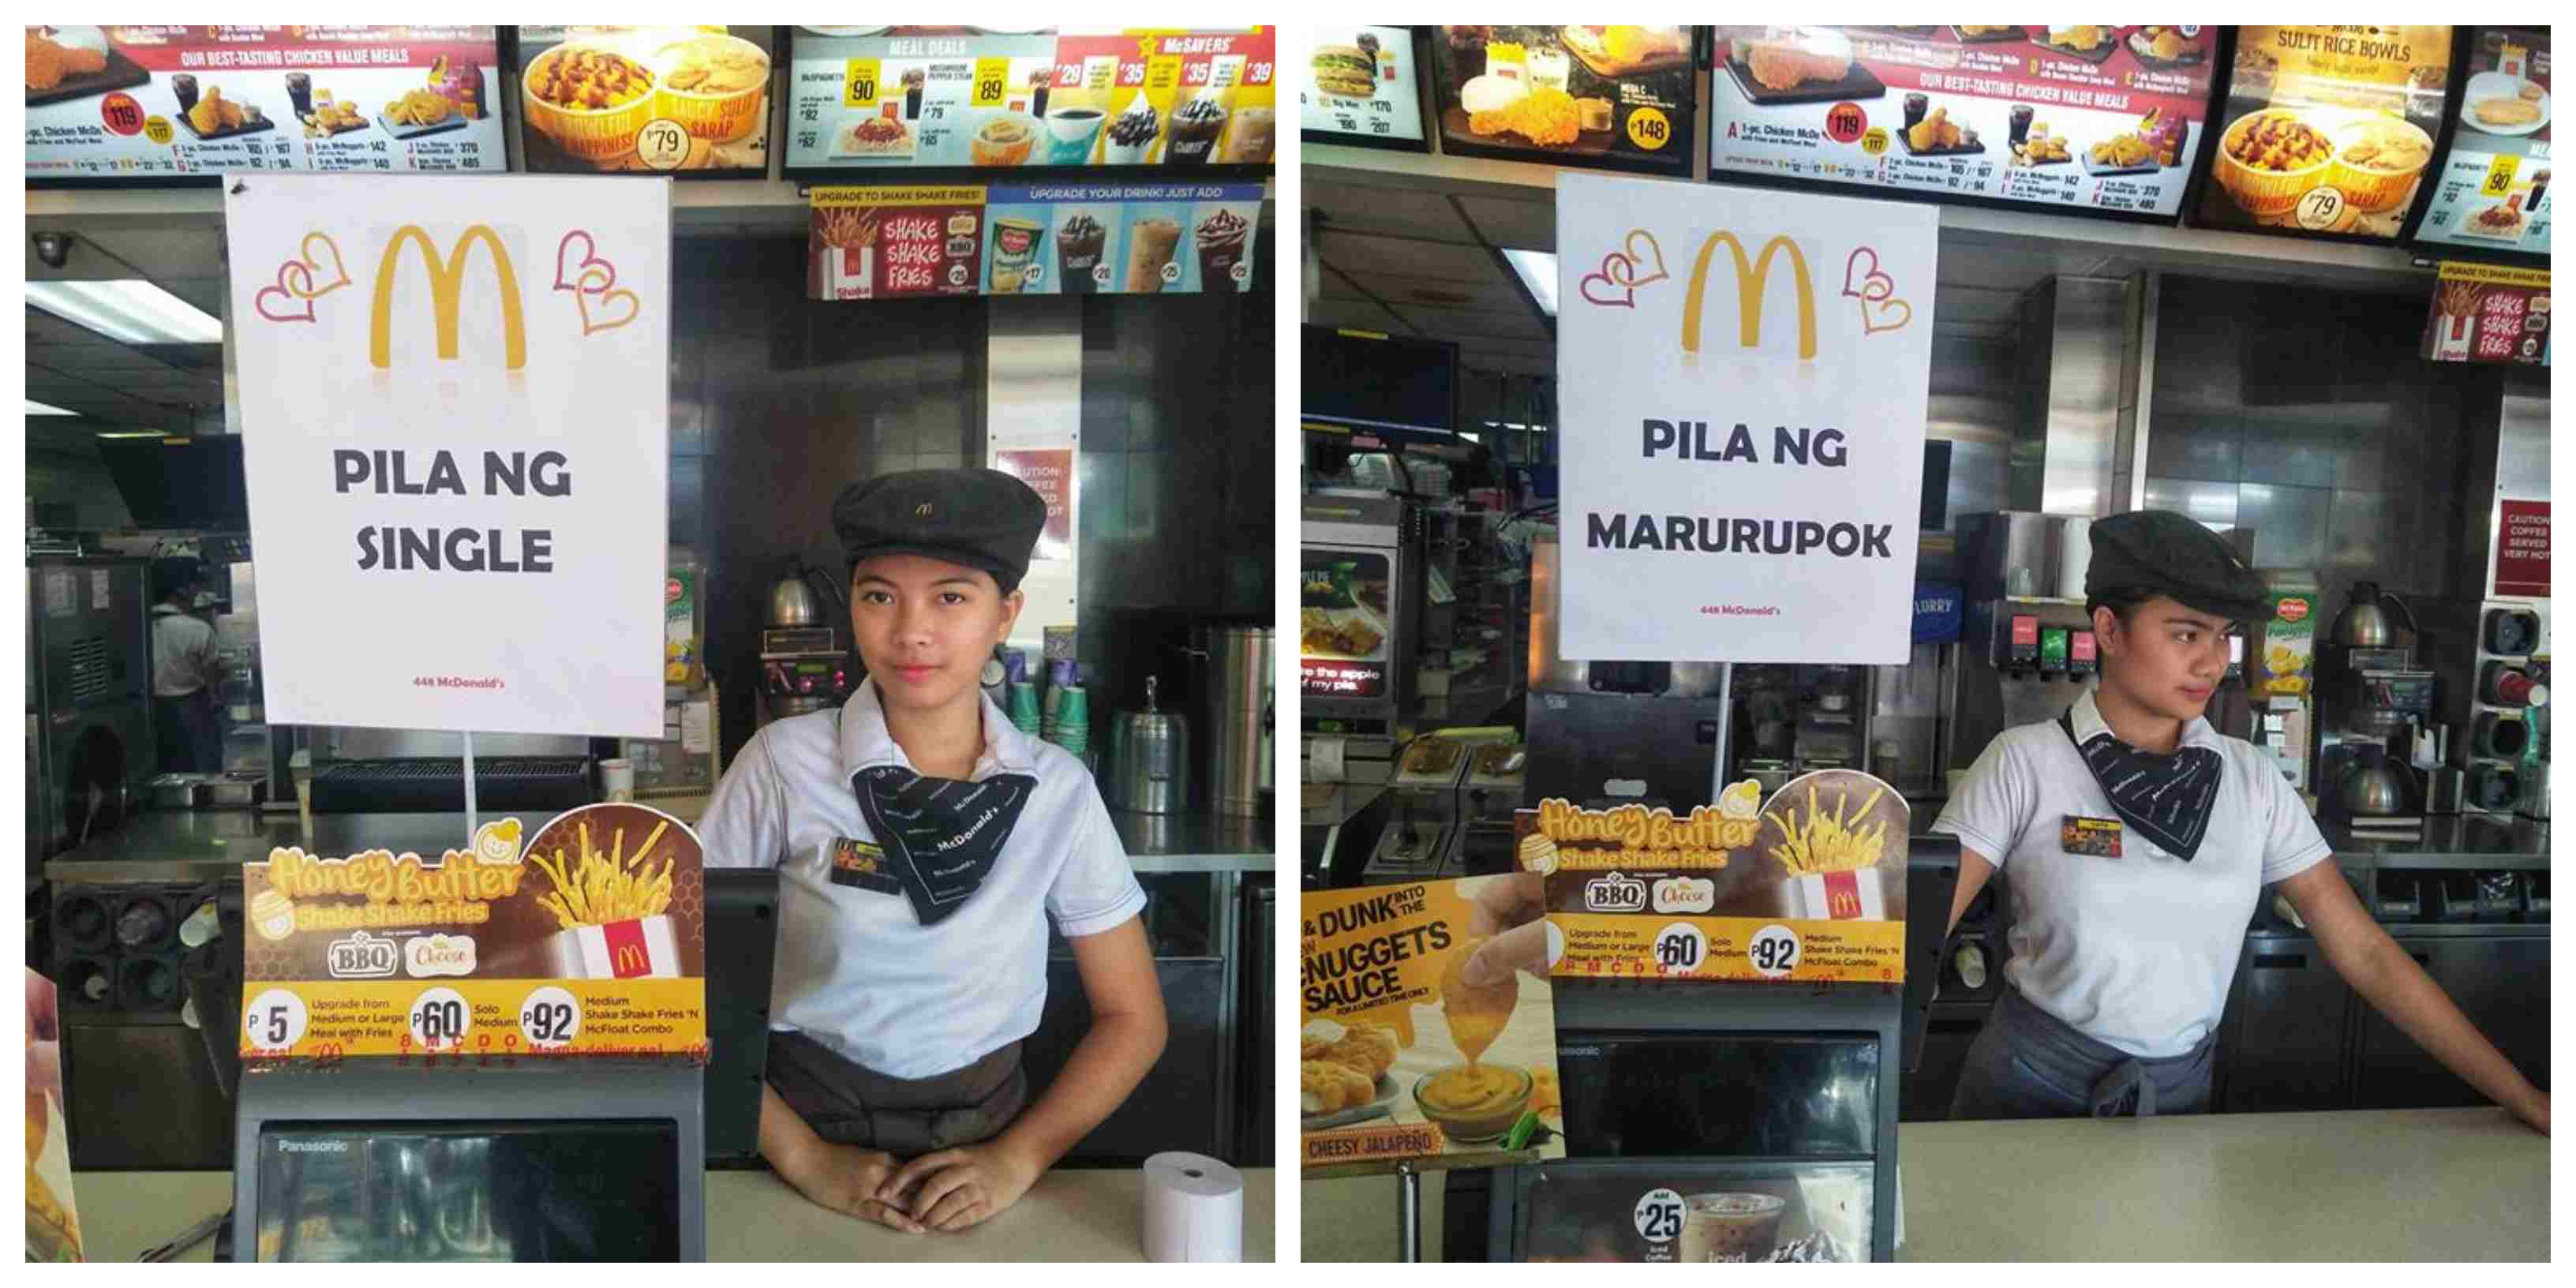 Photo: McDonald’s Halang Calamba/FB